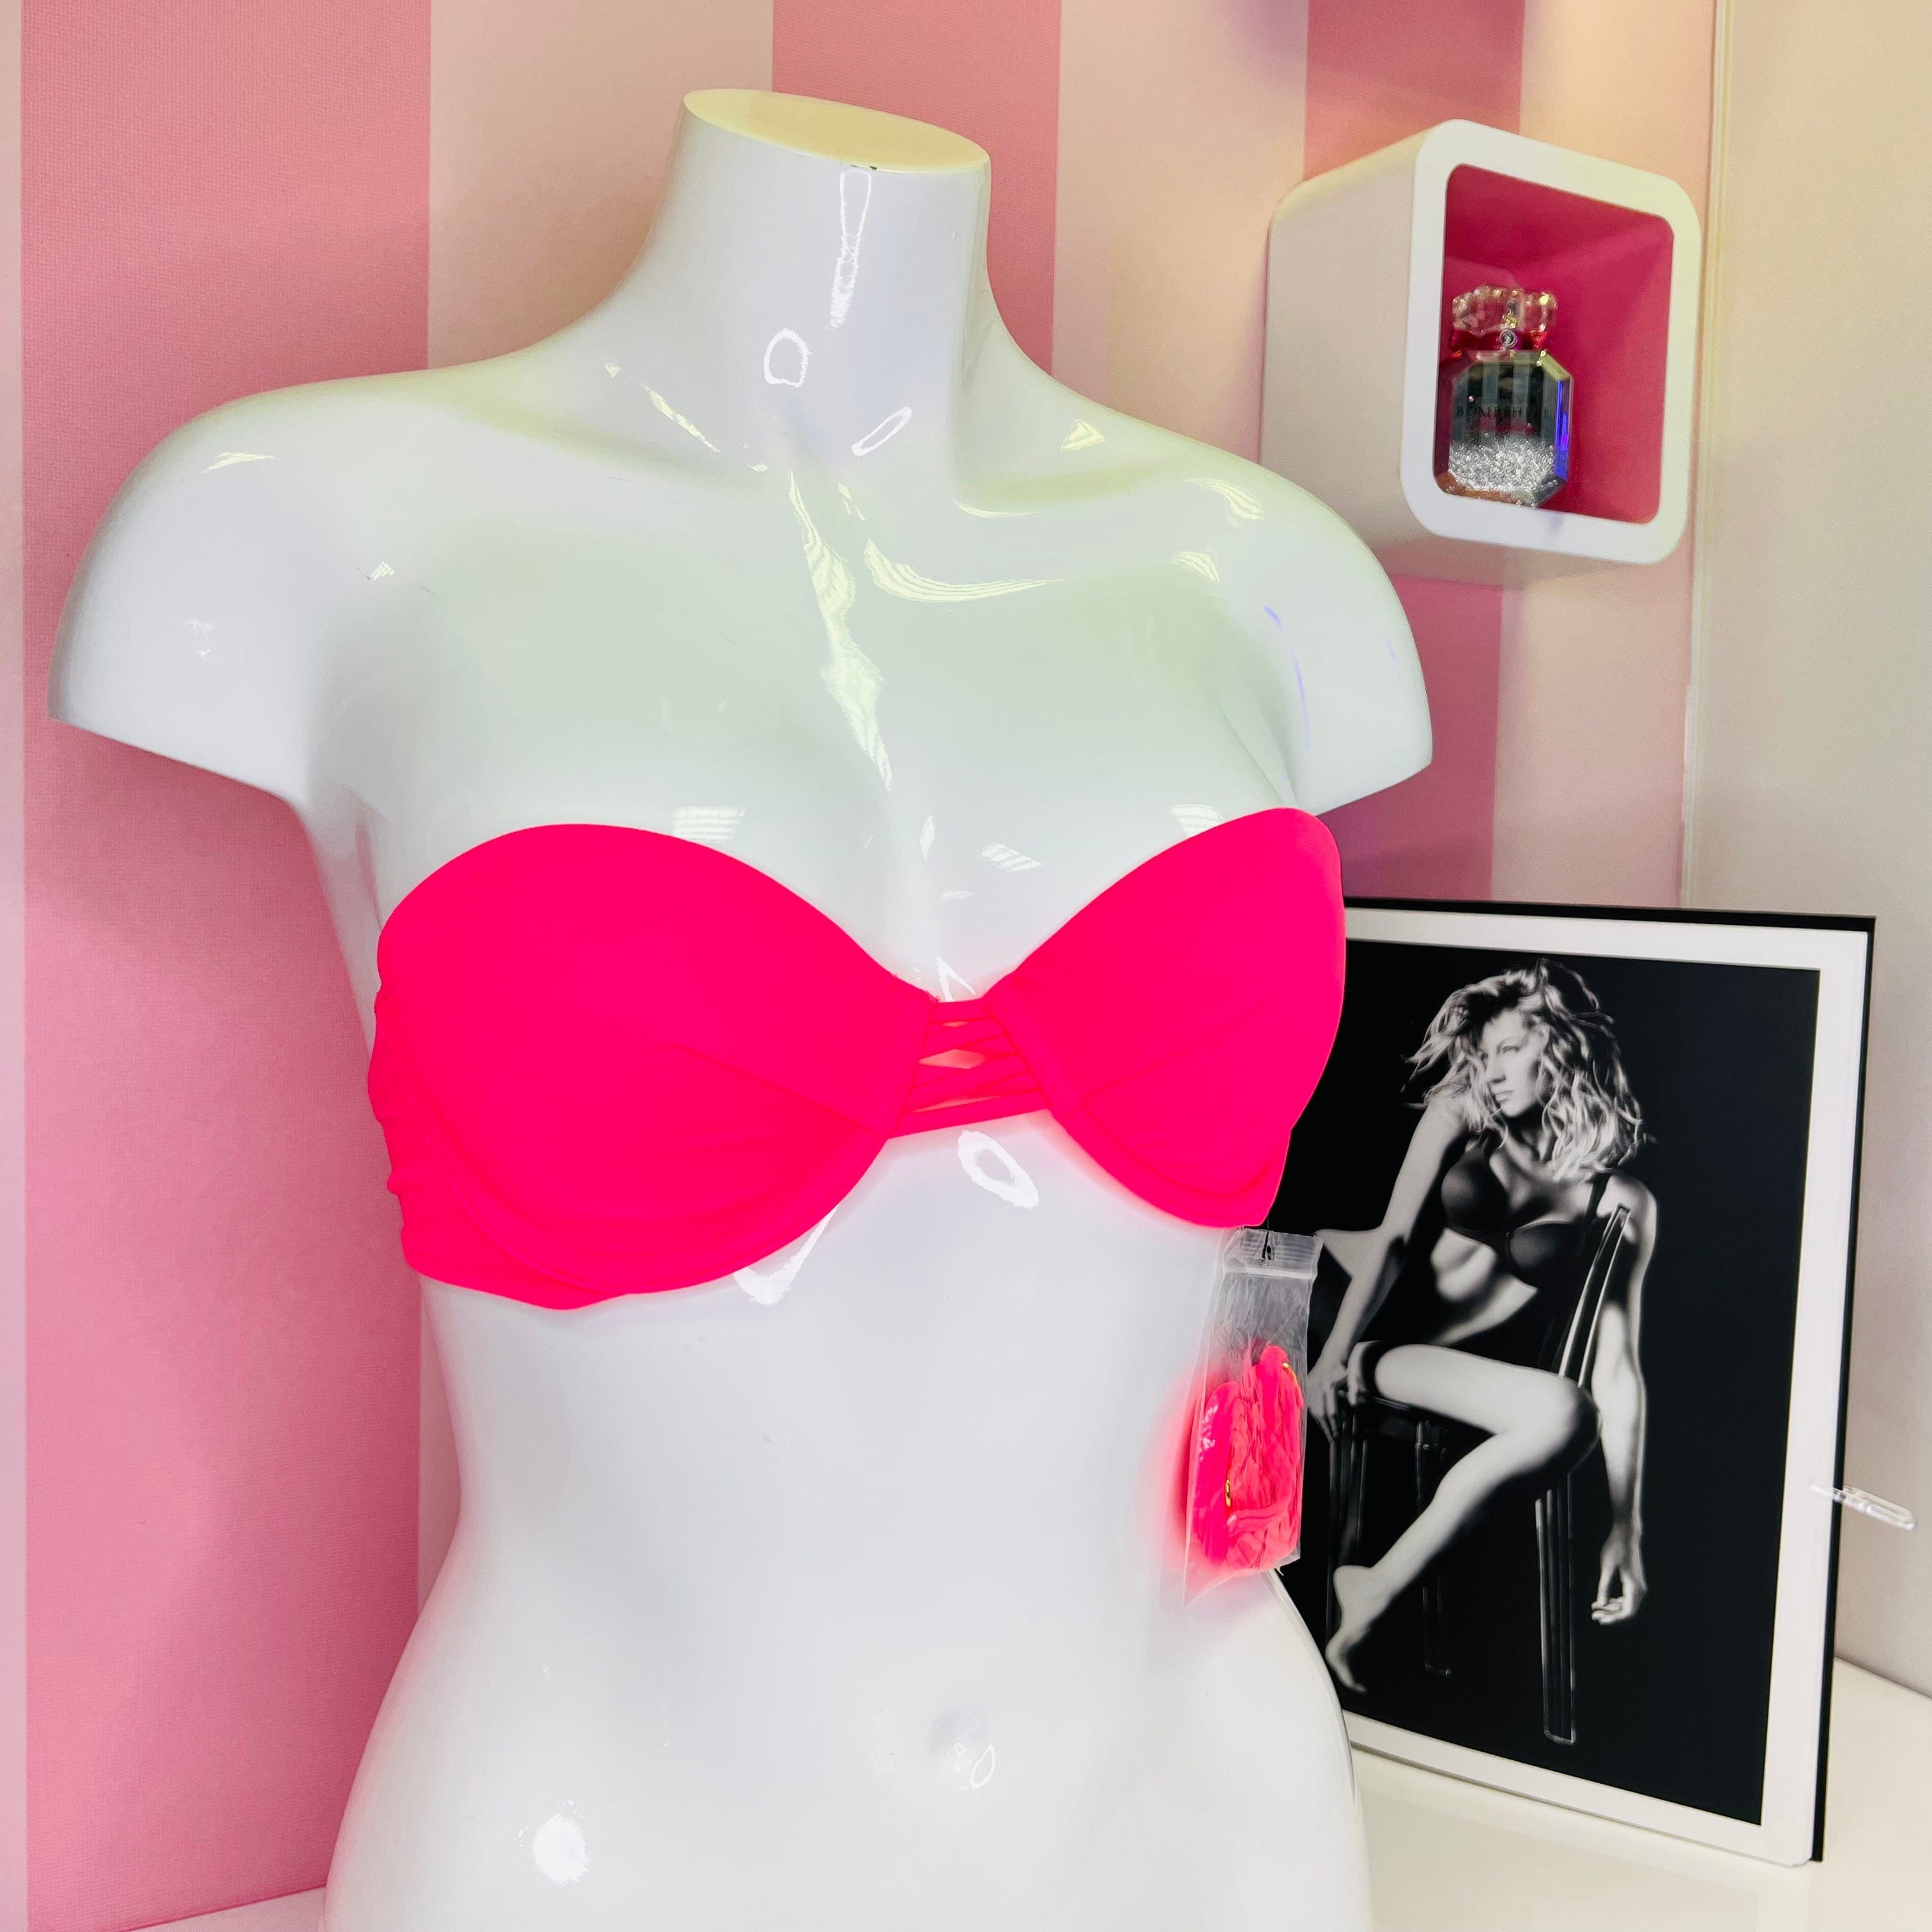 Horní díl plavek s ozdobnými šňůrkami na přední straně - Victoria’s Secret